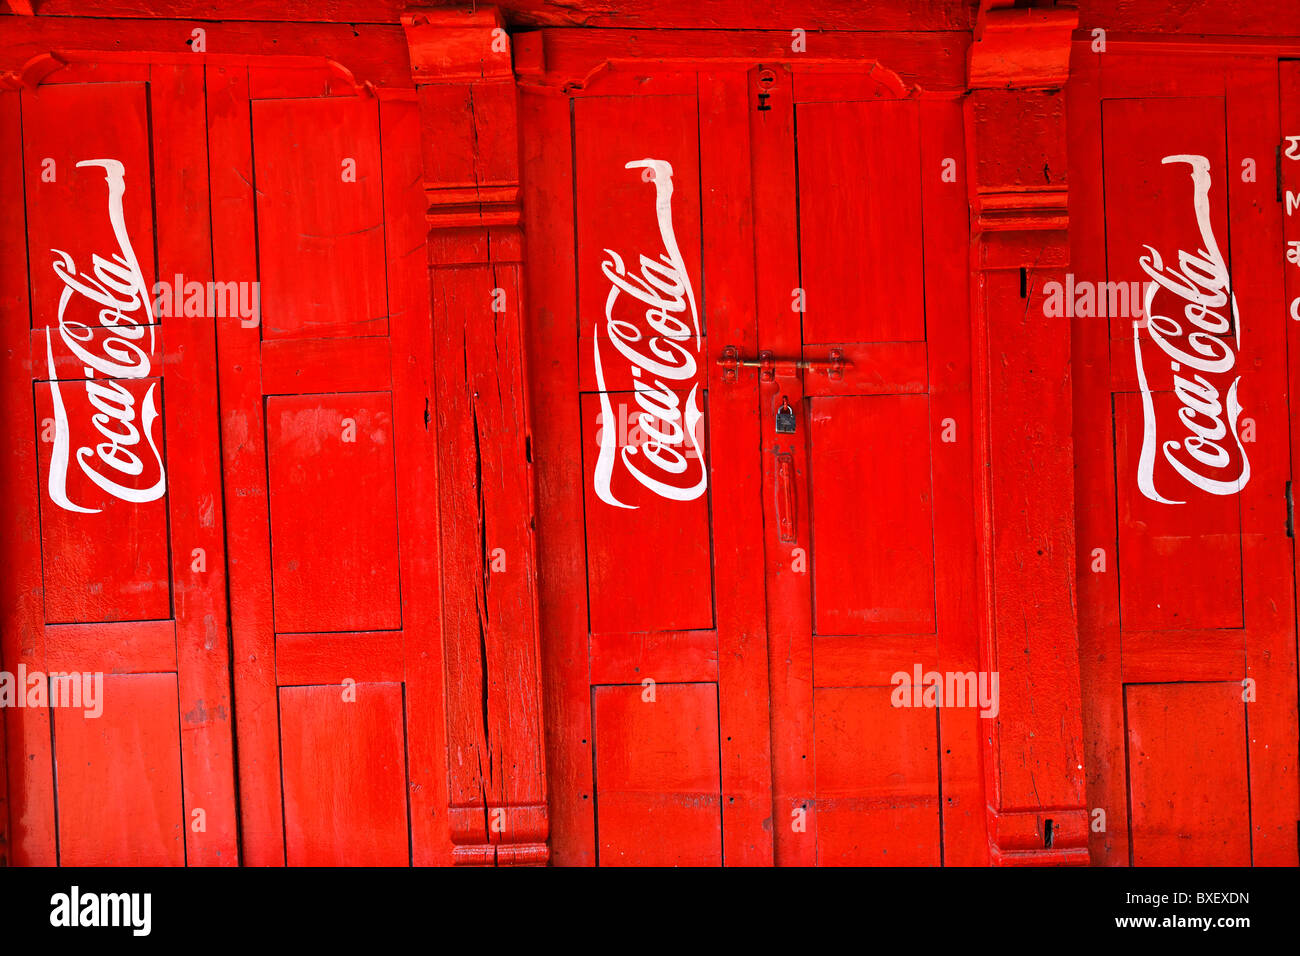 Népal - Vallée de Katmandou - Bhaktapur - Coca Cola publicité peinte sur une porte Banque D'Images